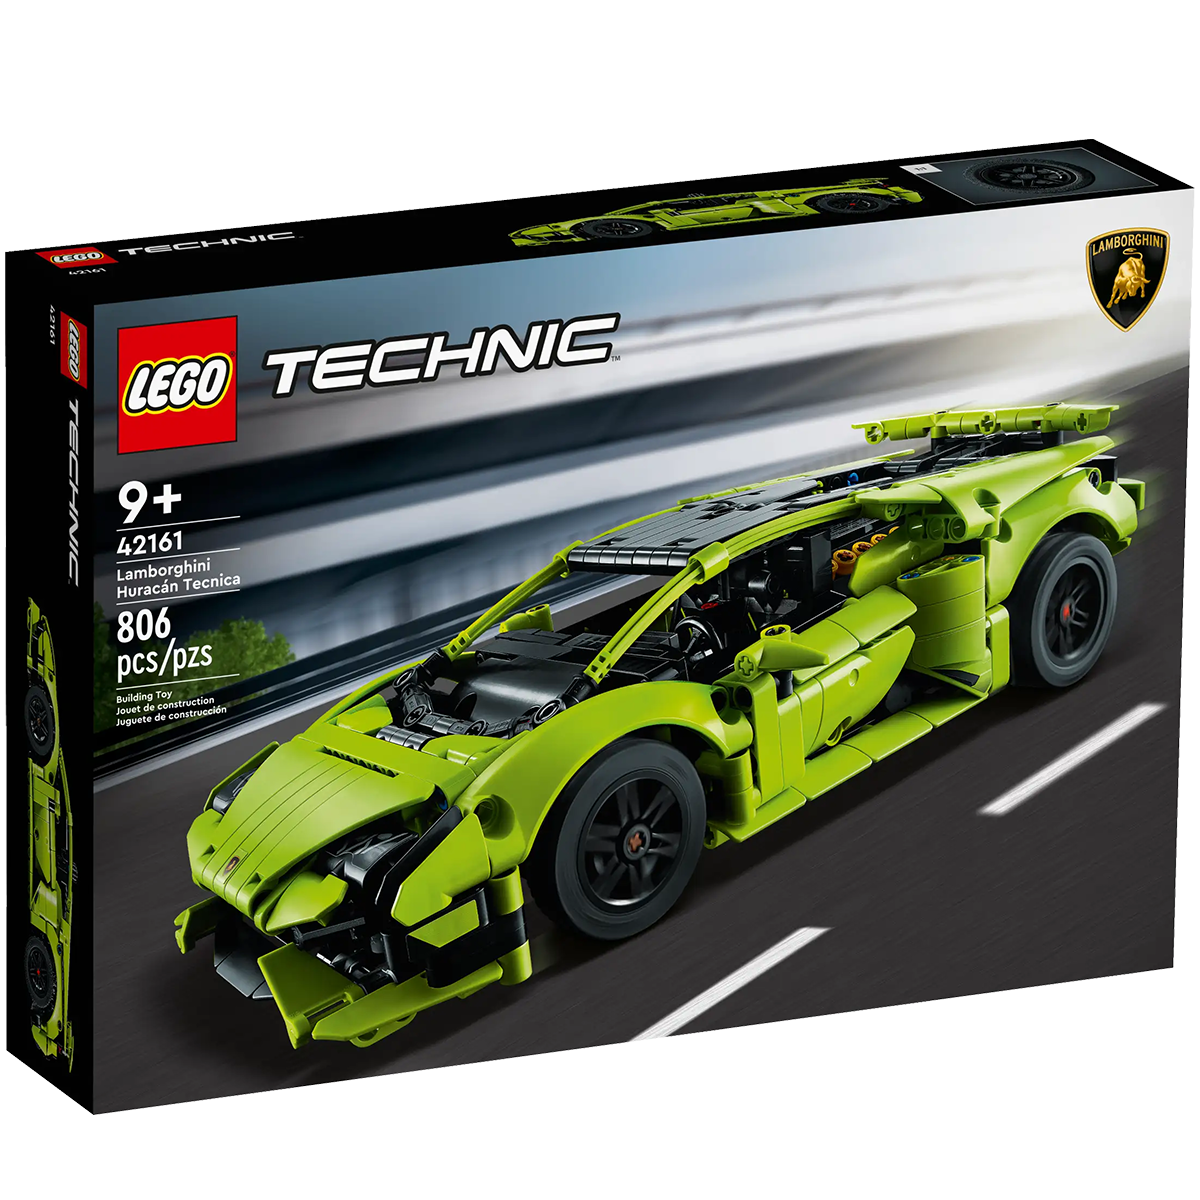 Авто-конструктор LEGO Technic Lamborghini Huracan Tecnica (42161)